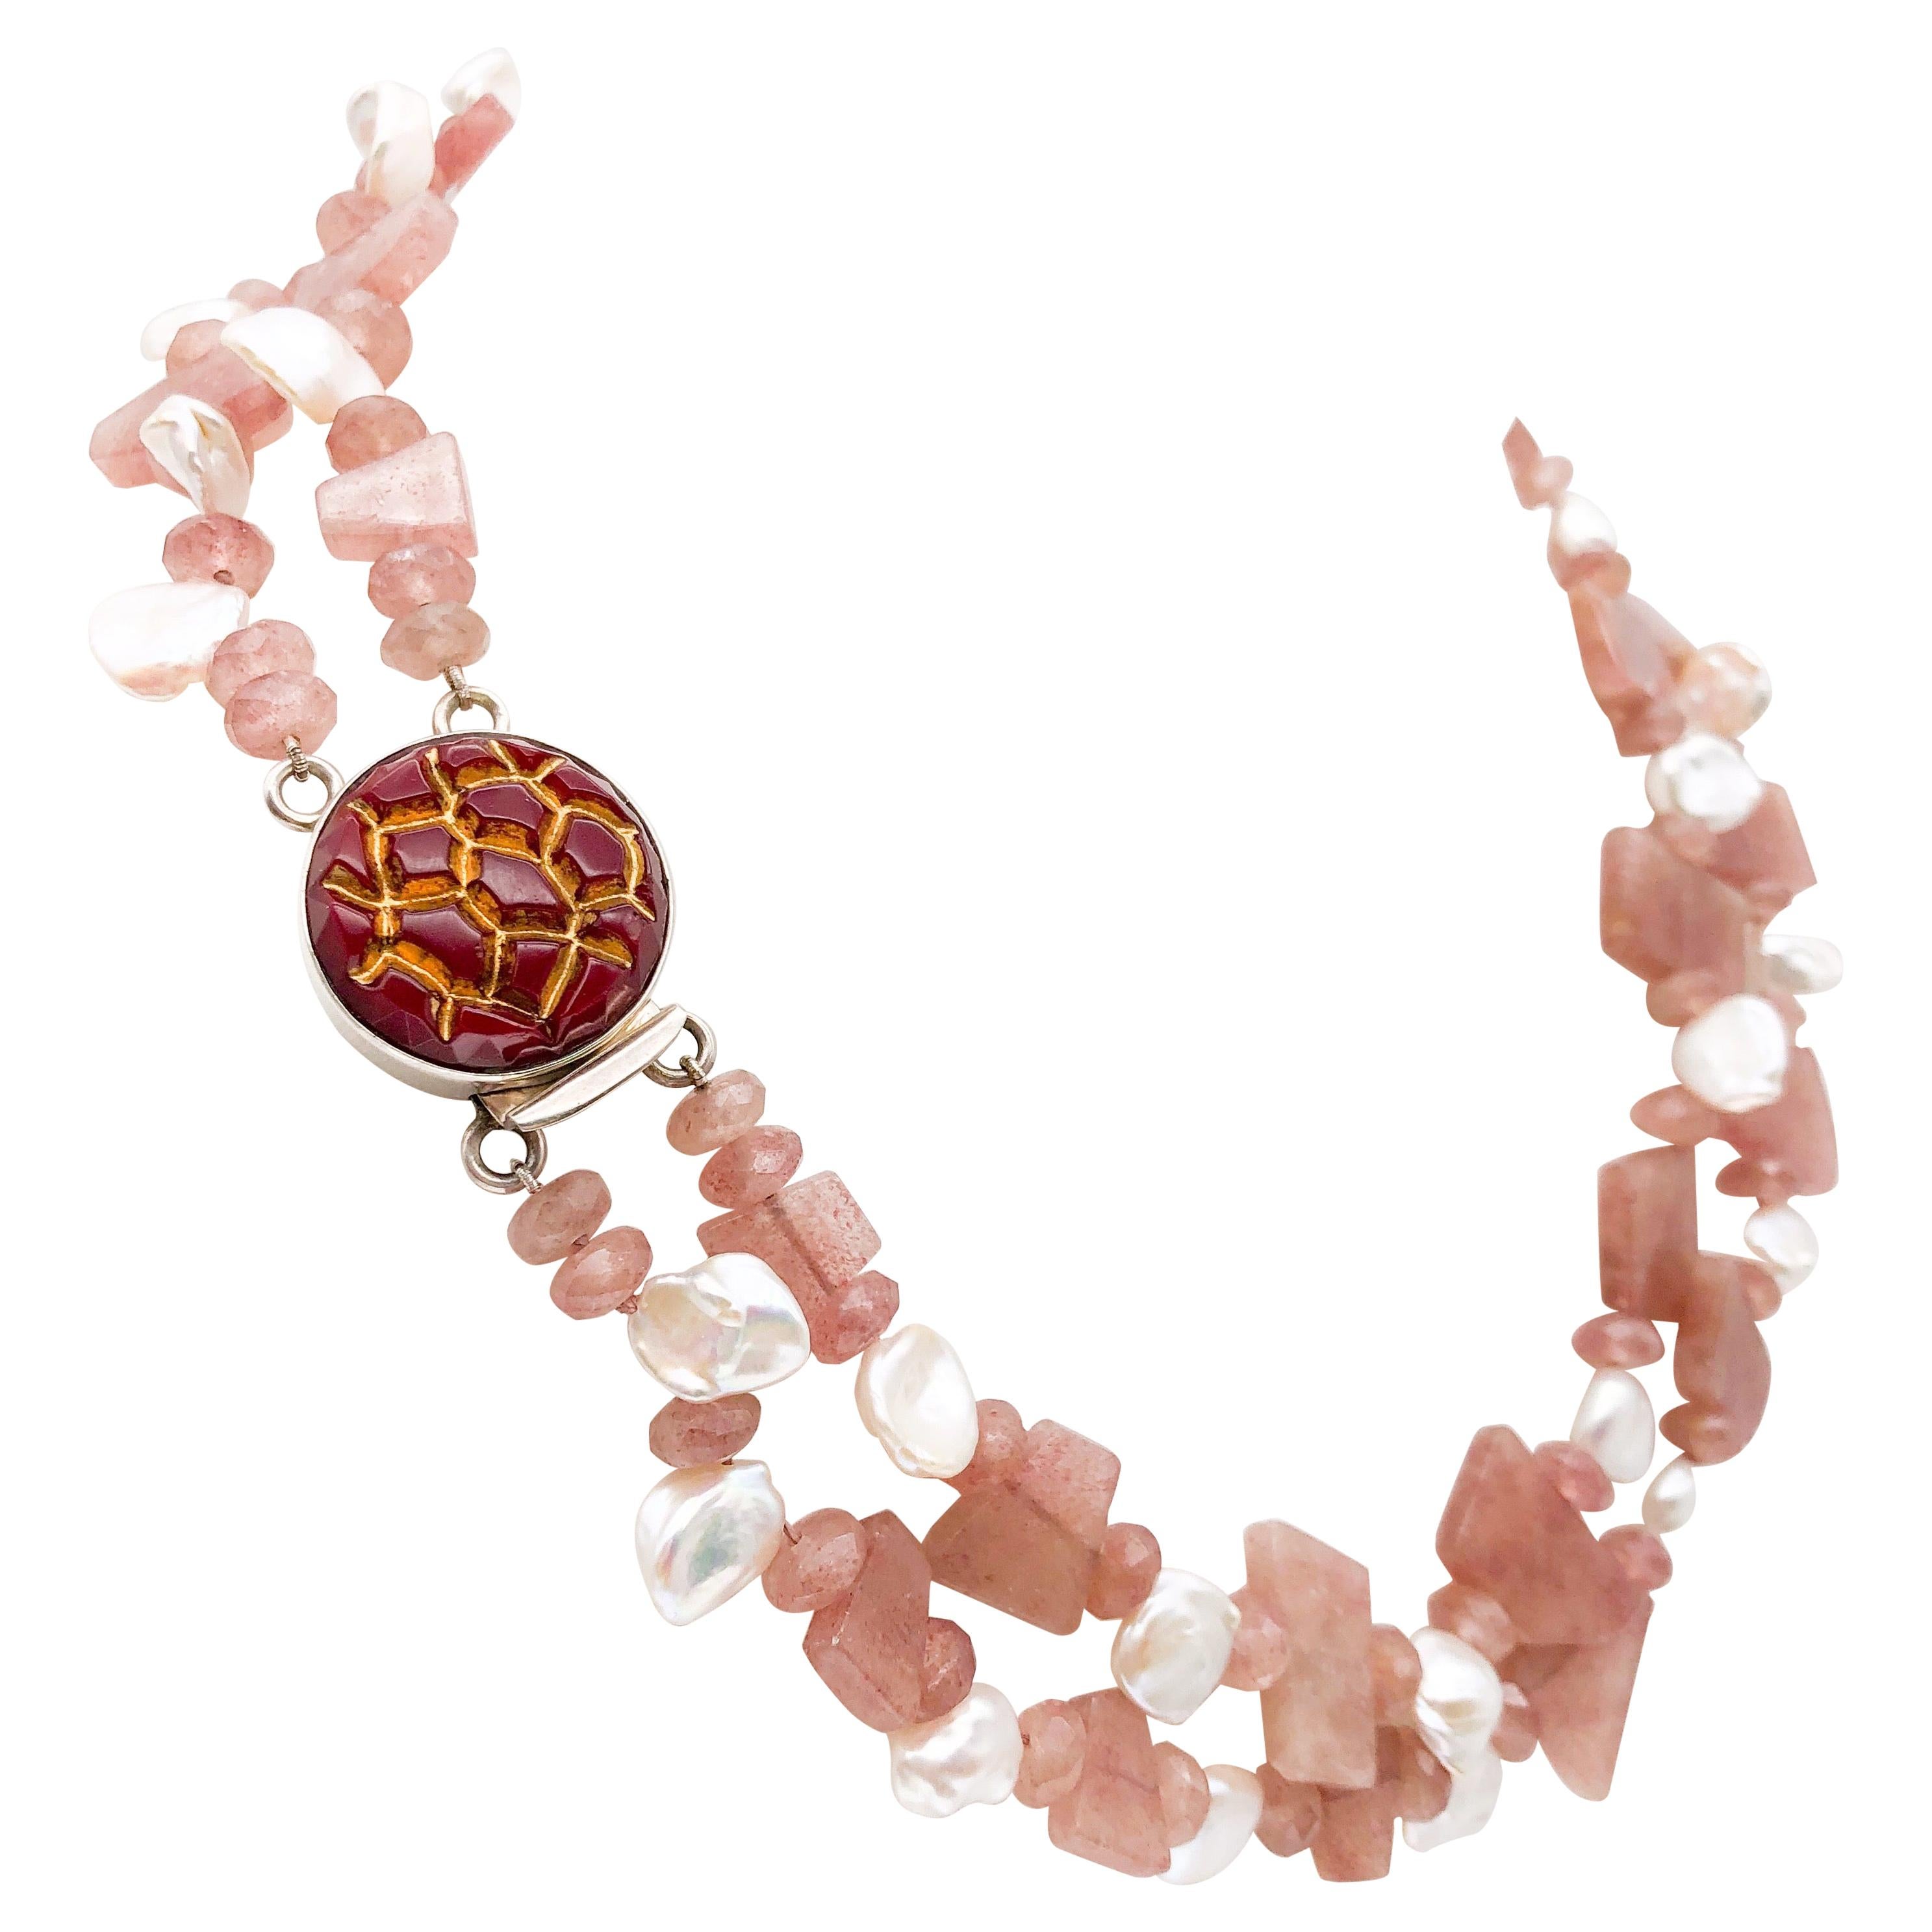 Halskette aus Rosen- und Süßwasserperlen von A.Jeschel mit Rhodocrosite